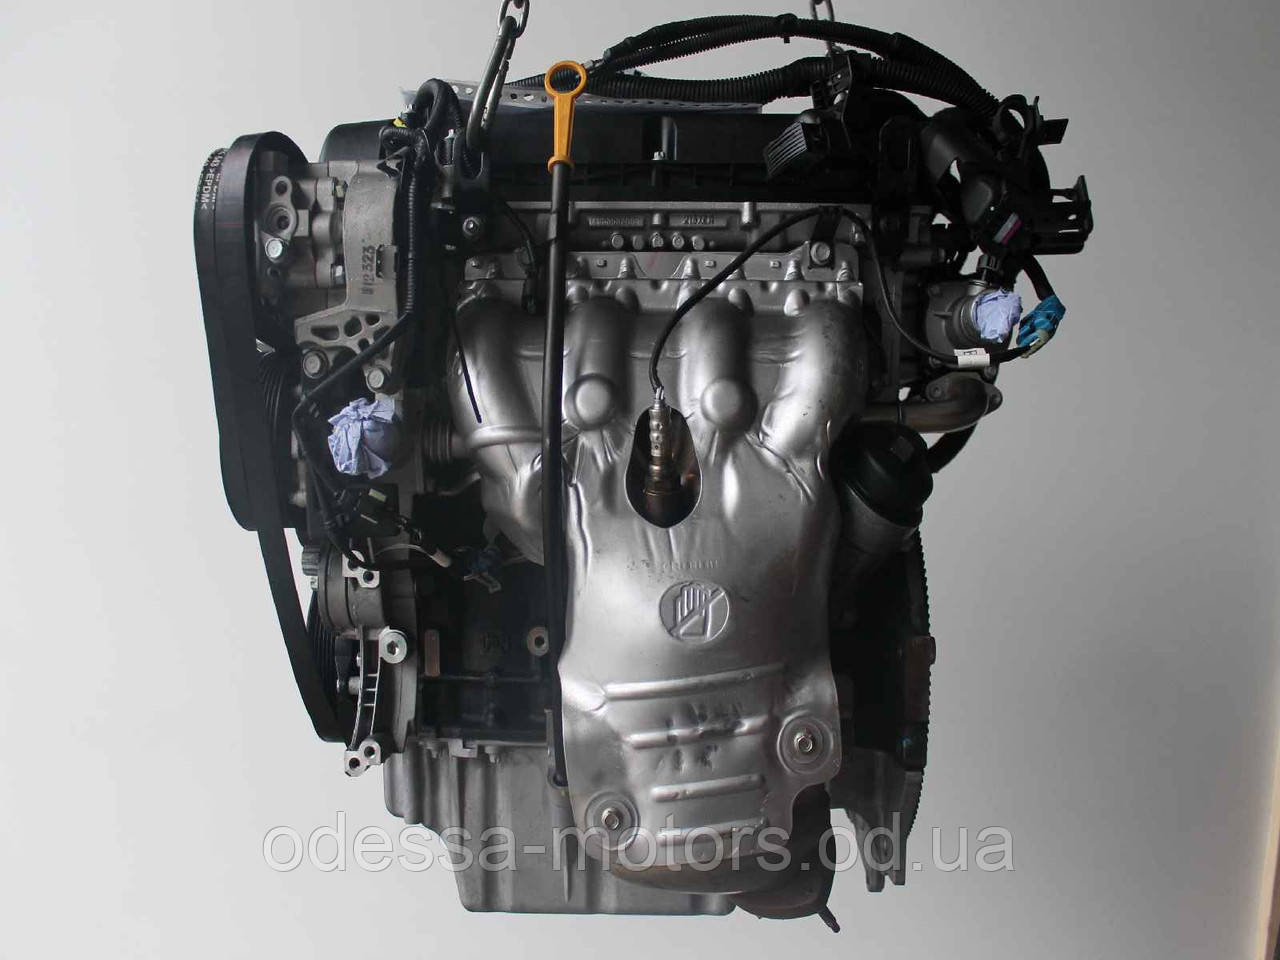 Двигун Opel Astra GTC J 1.8, 2011-today тип мотора A 18 XER